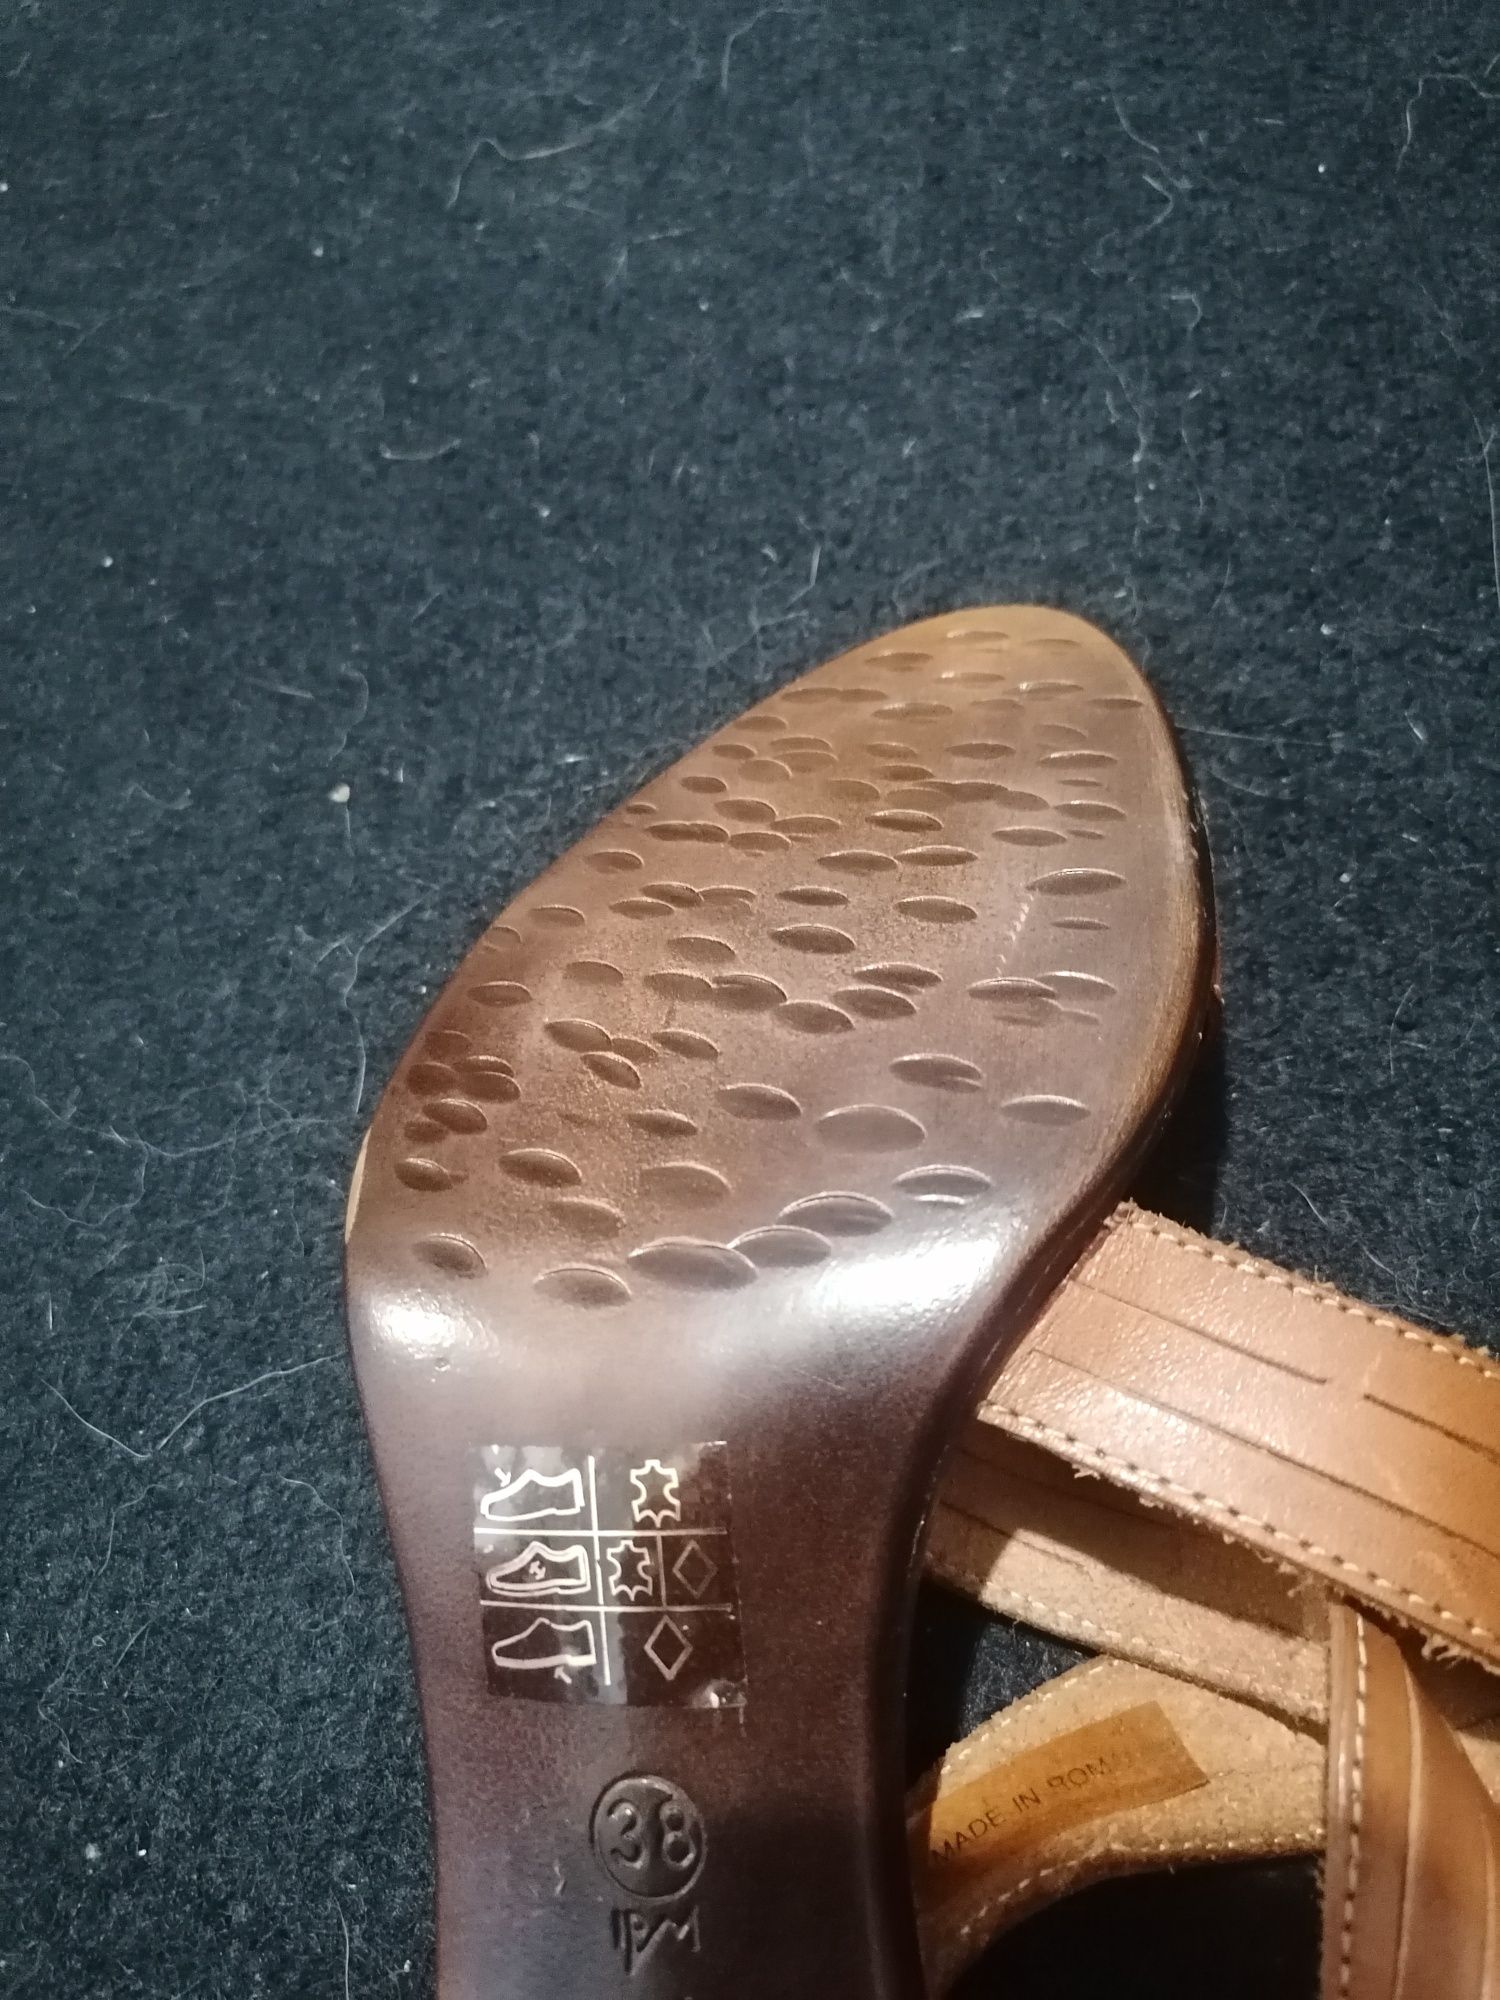 Sandale piele naturala, noi, cu eticheta, mas 38, pret 100 lei.